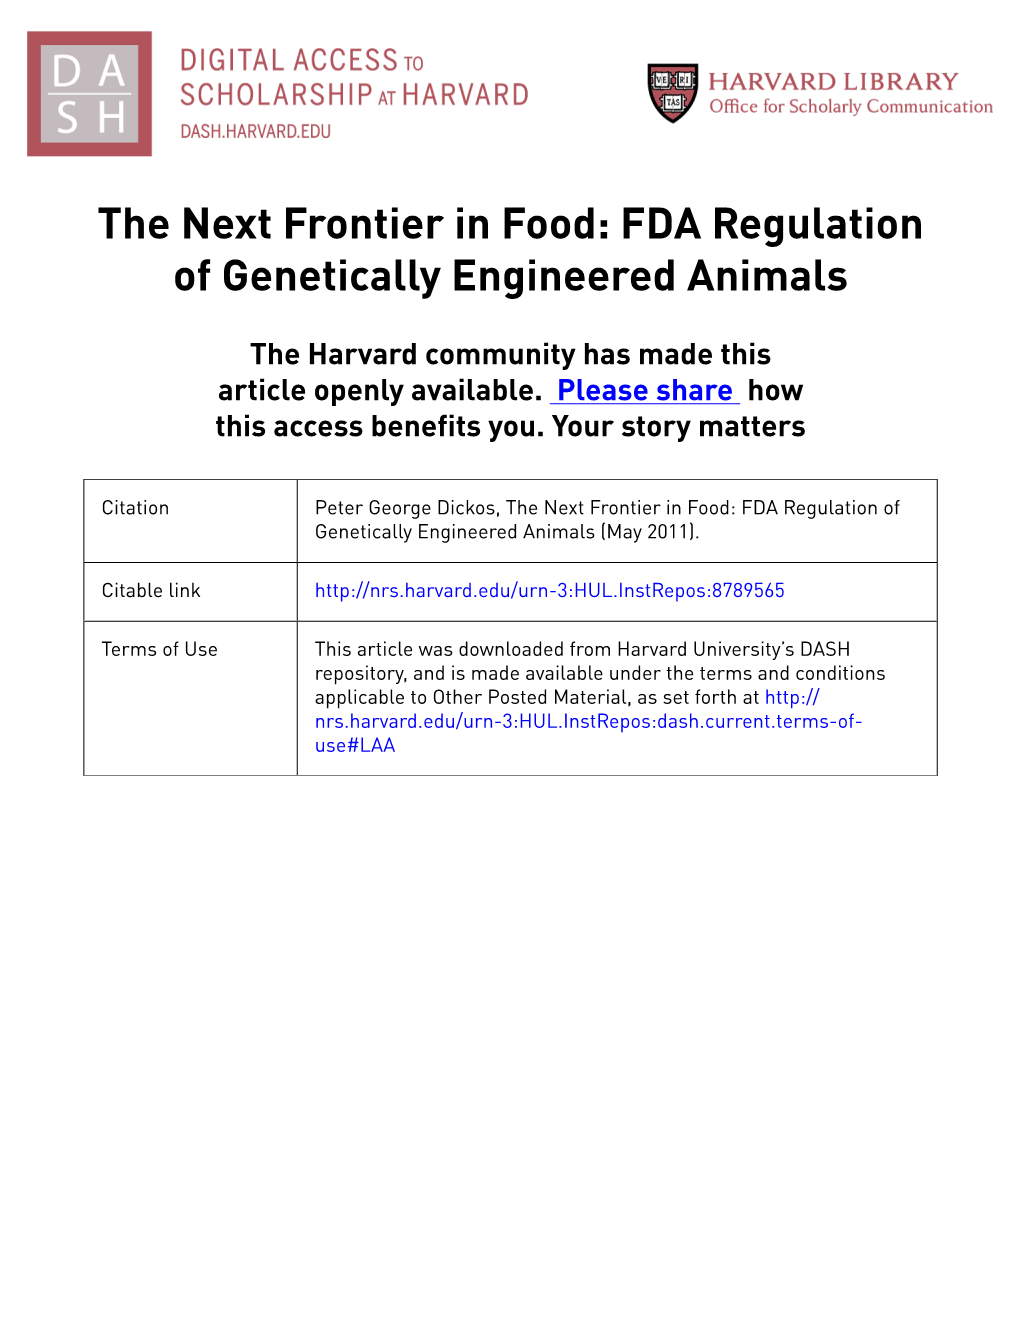 FDA Regulation of Genetically Engineered Animals